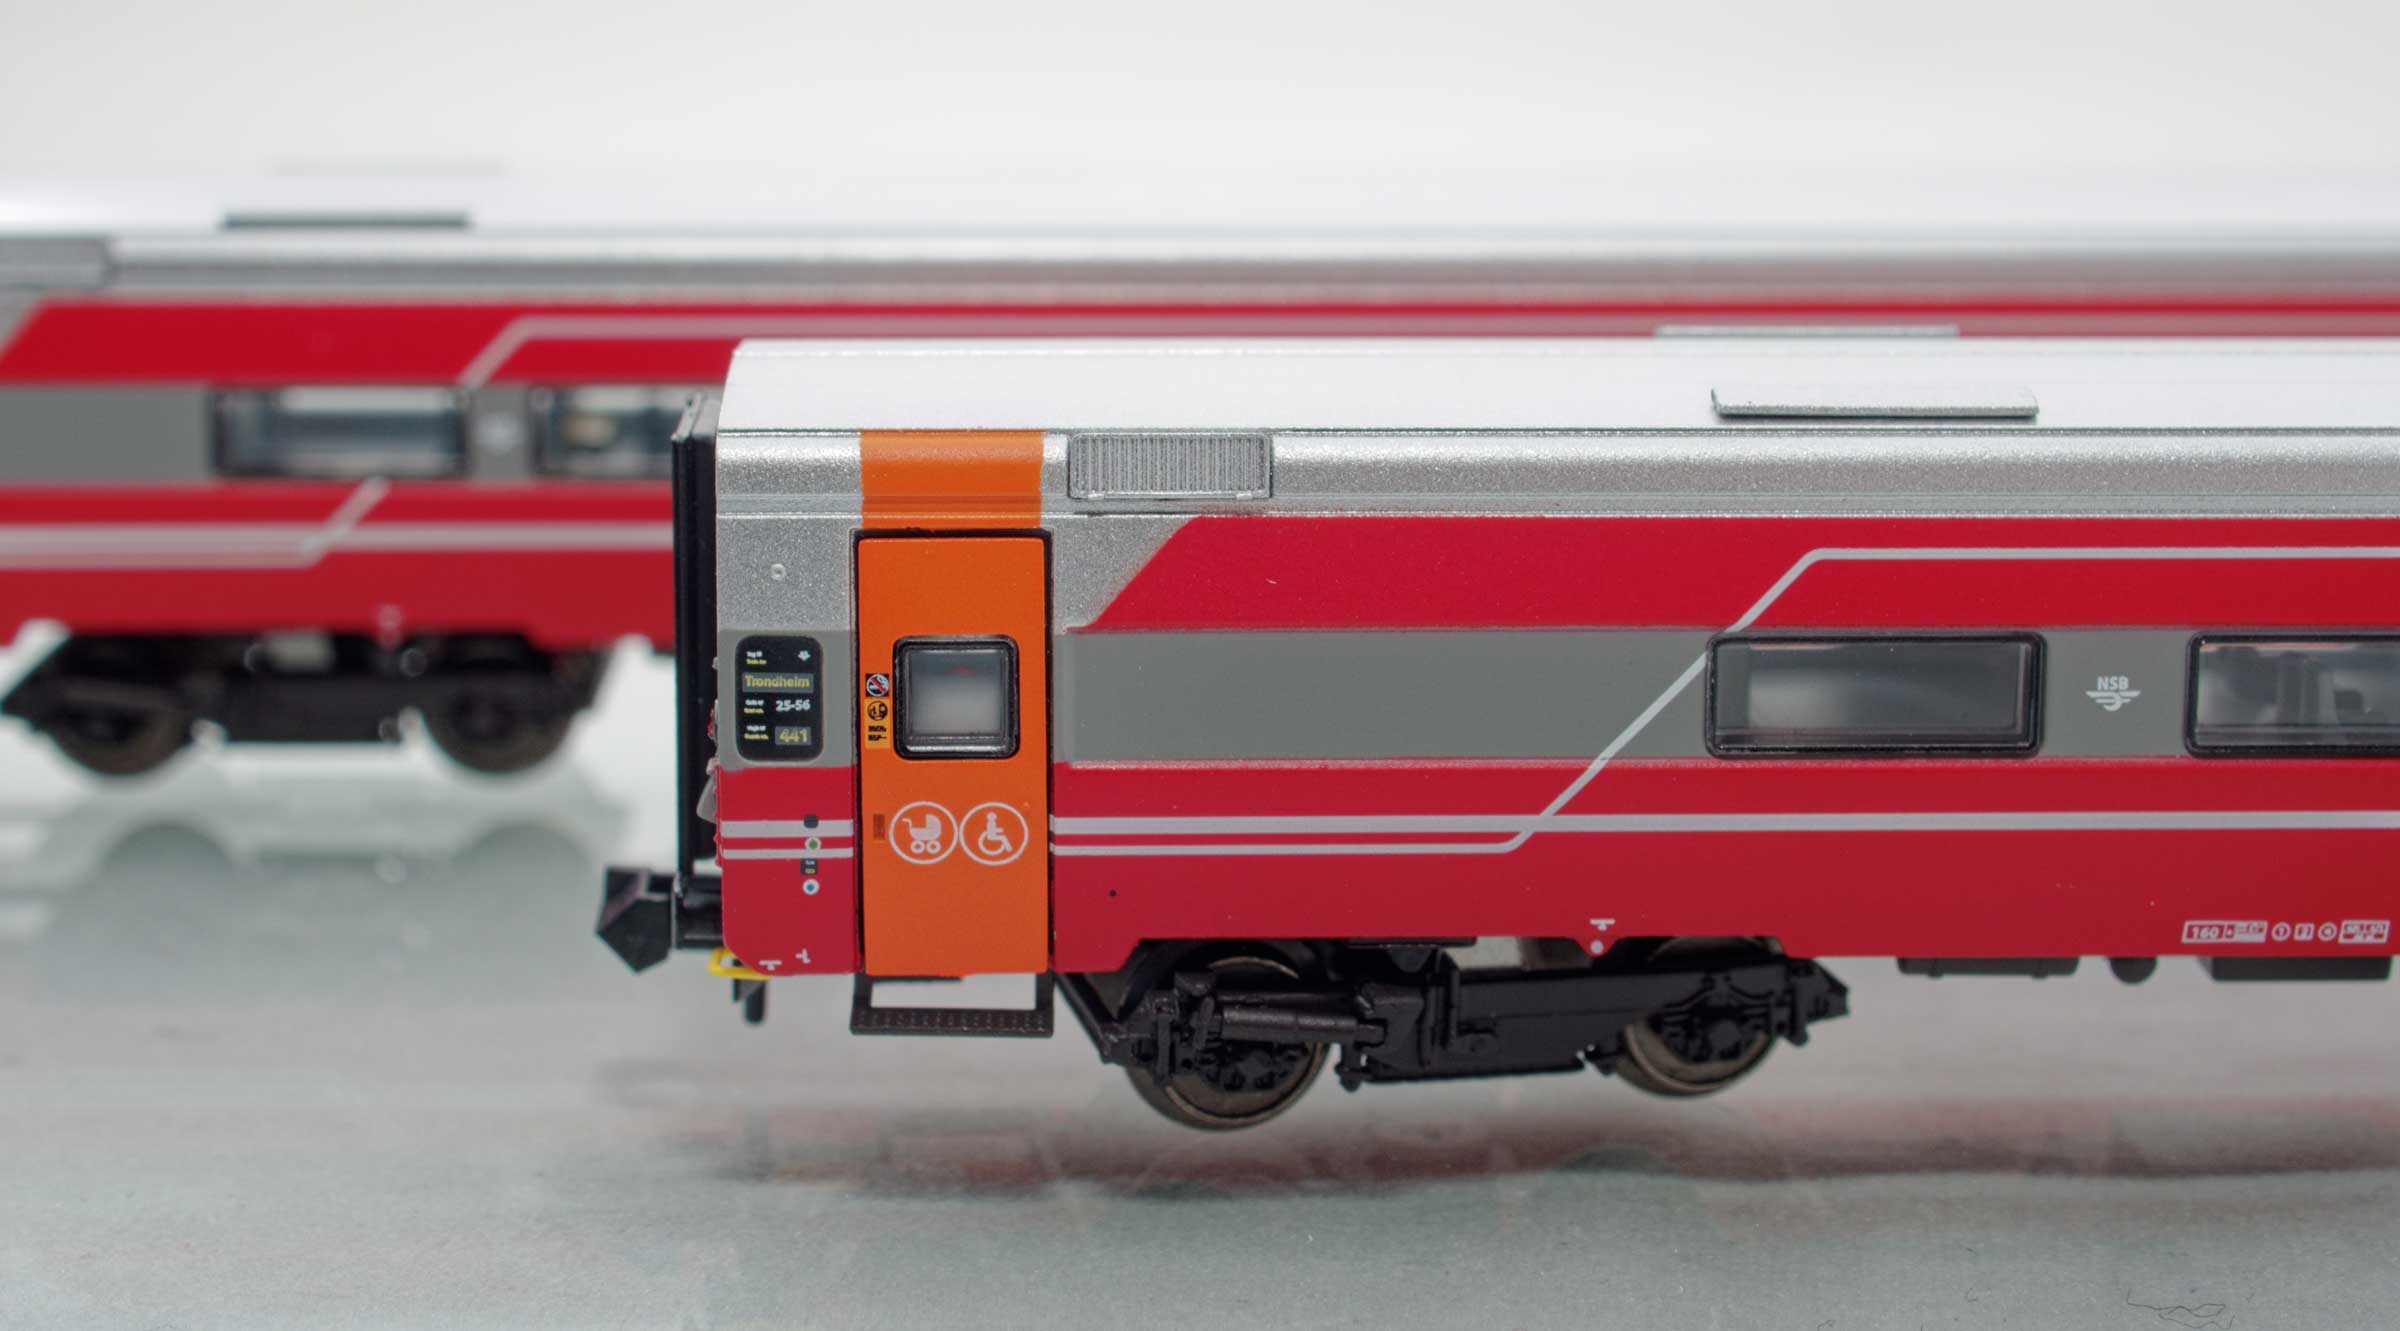 Set 18002: NSB Expresszugwagen A7-1 und BC 7-1